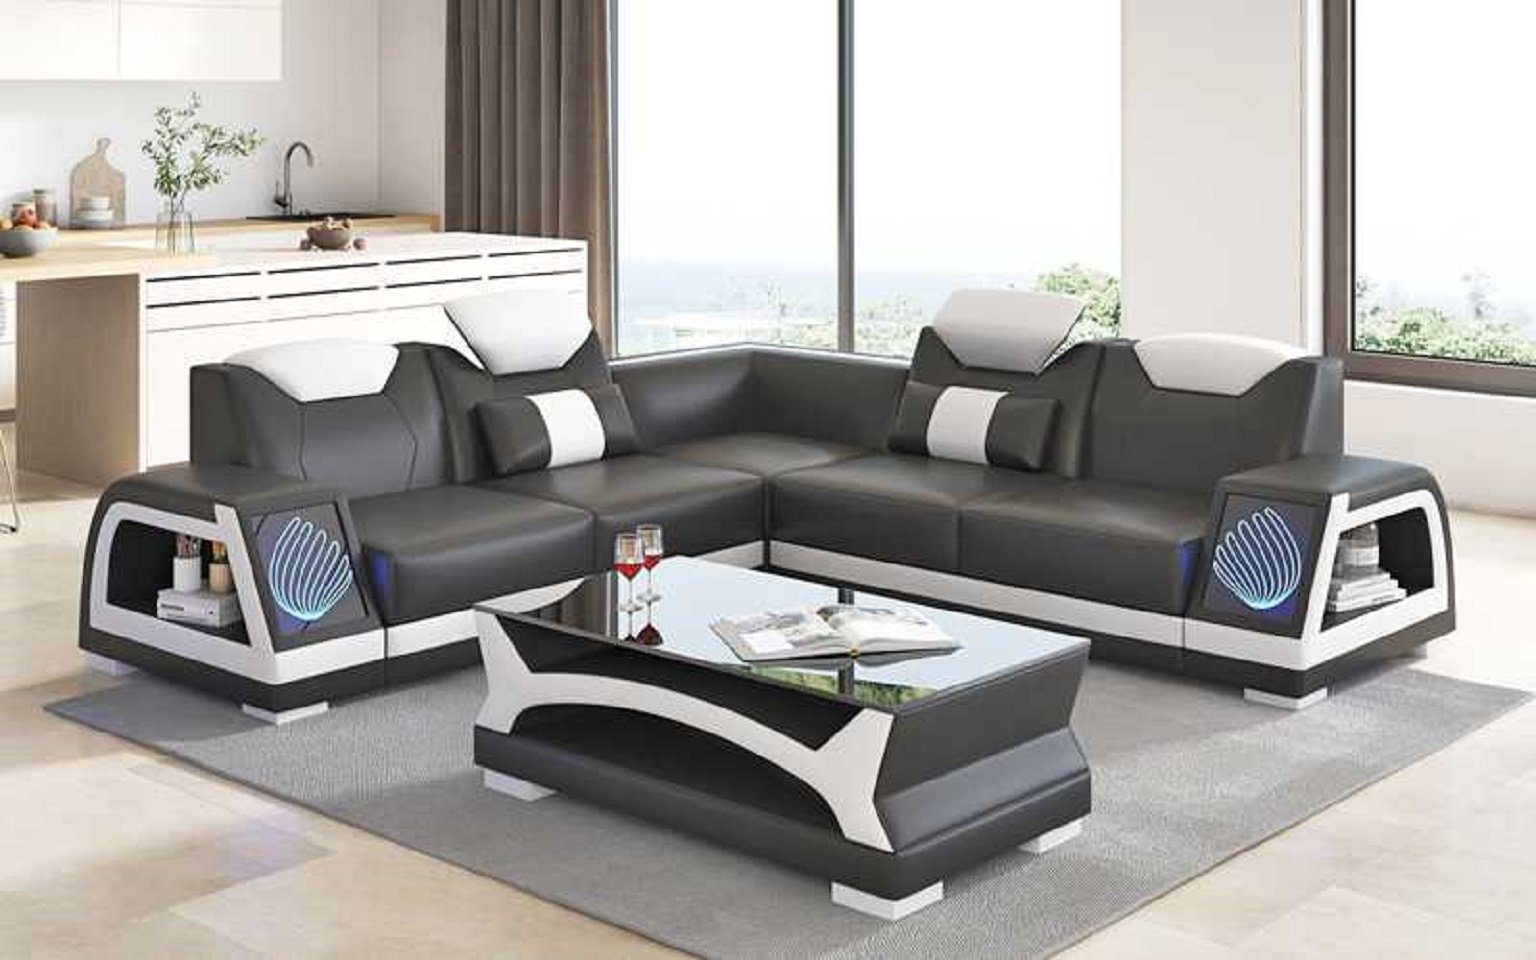 JVmoebel Ecksofa Modern L Couchen, Luxus Europe Made Design Ecksofa Couch Kunstleder Form Teile, Sofa 3 in Schwarz